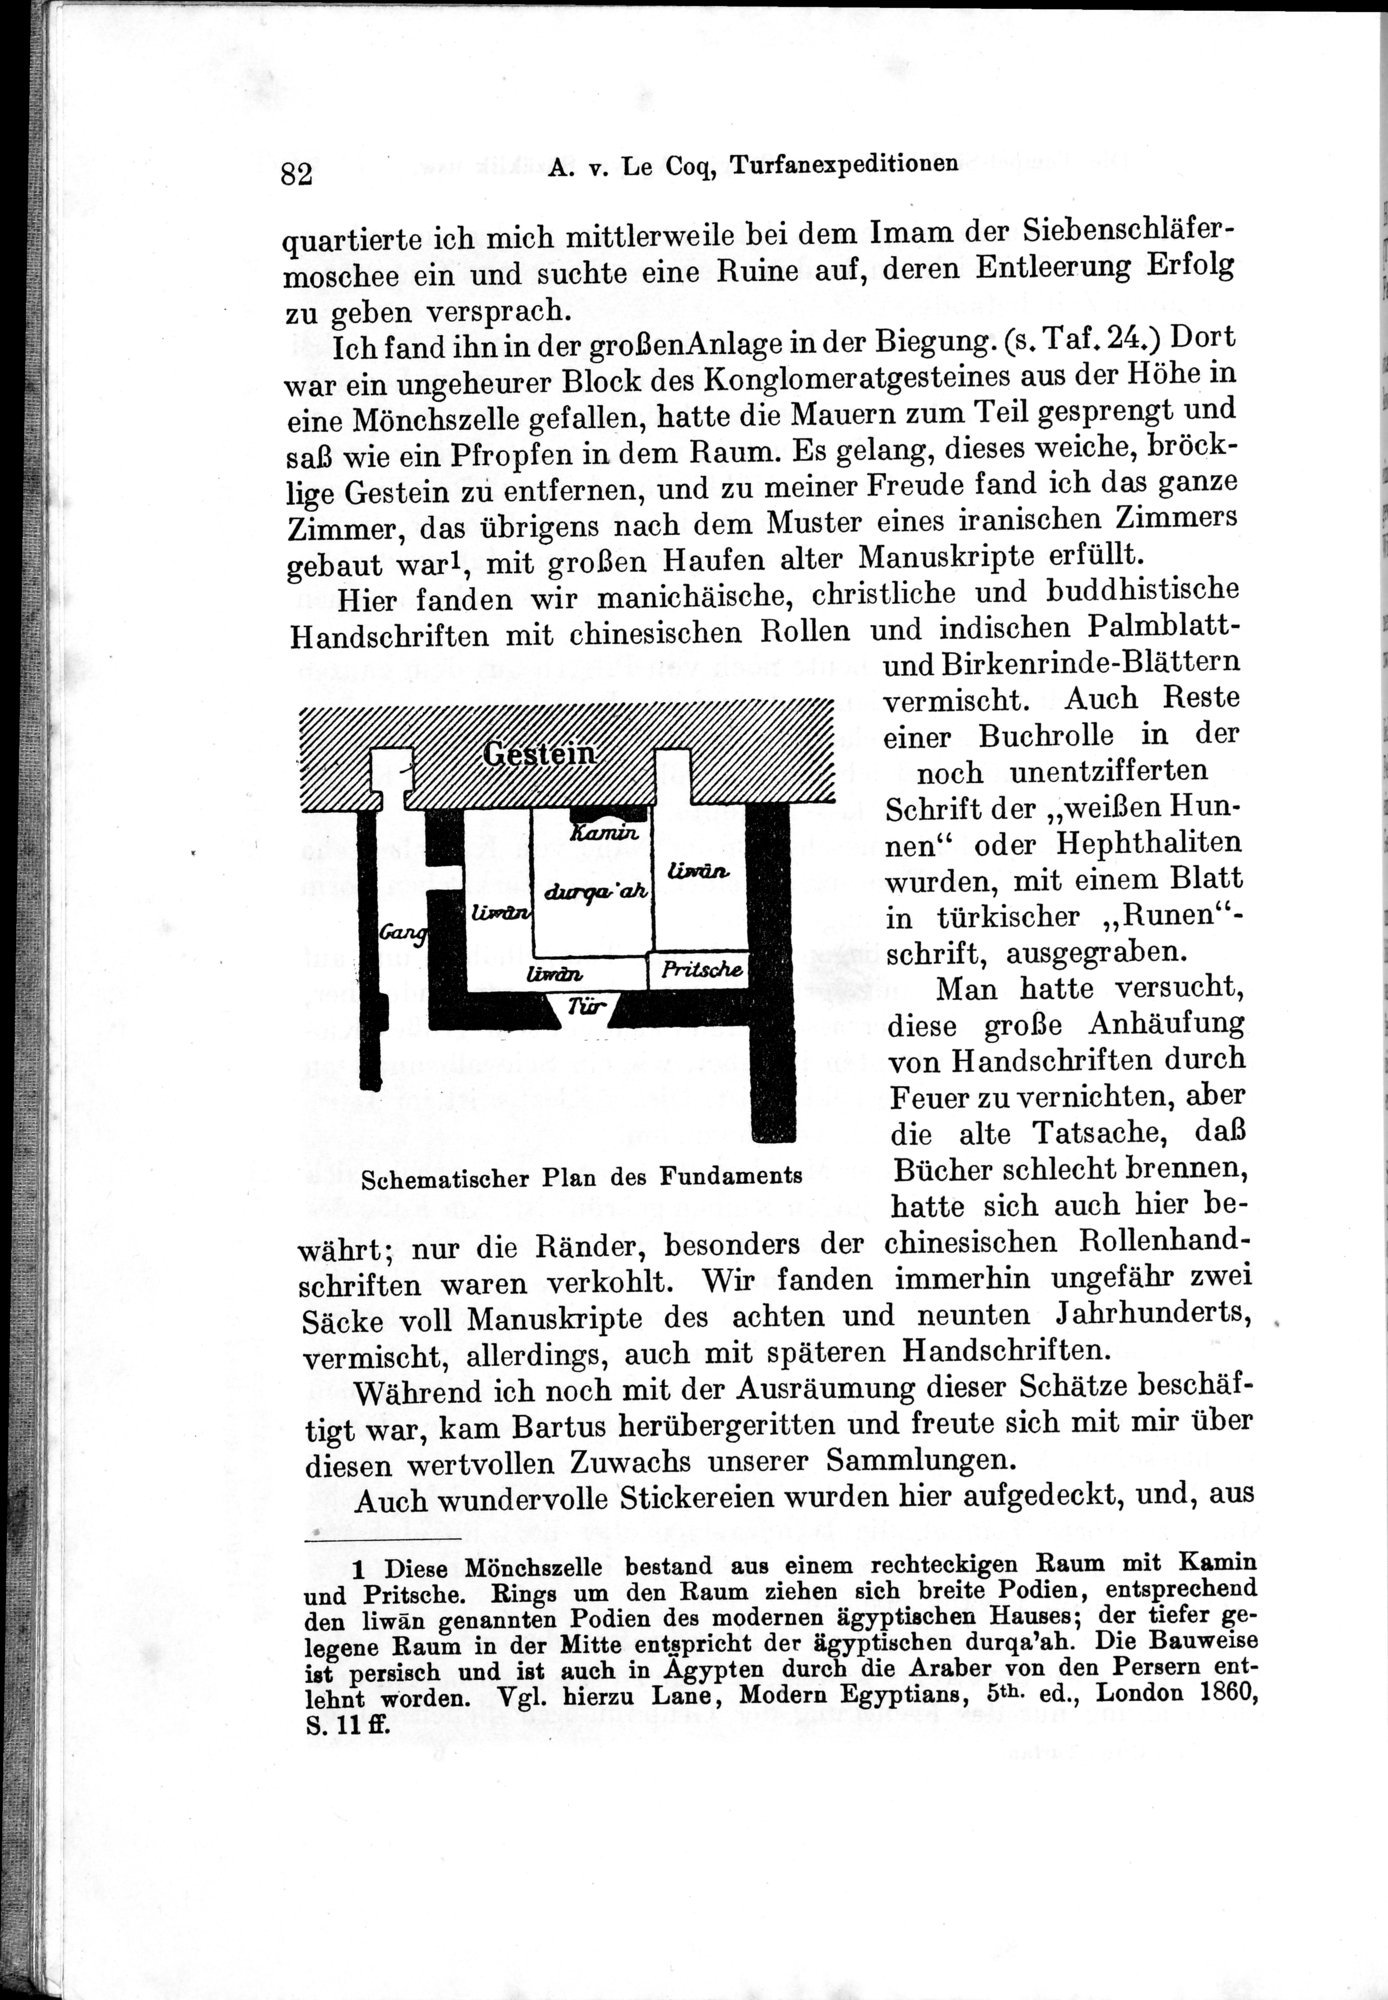 Auf Hellas Spuren in Ostturkistan : vol.1 / Page 122 (Grayscale High Resolution Image)